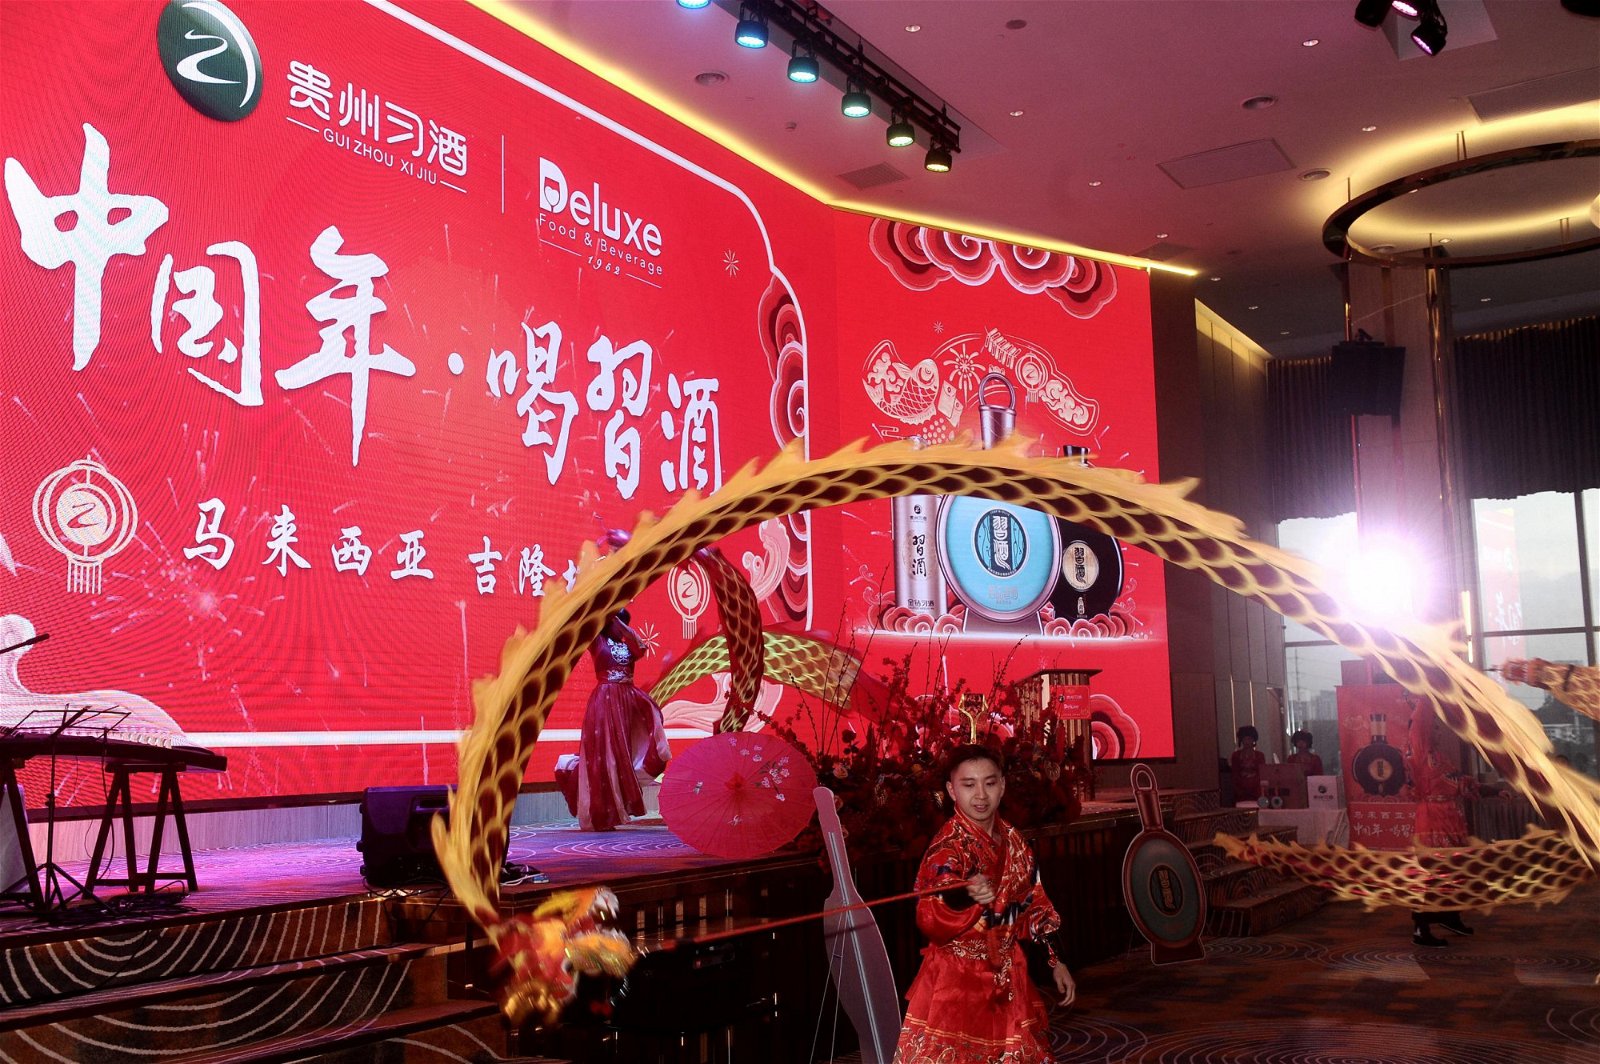 习酒于2014年推出的“中国年•喝习酒”活动迈入第十个年头。